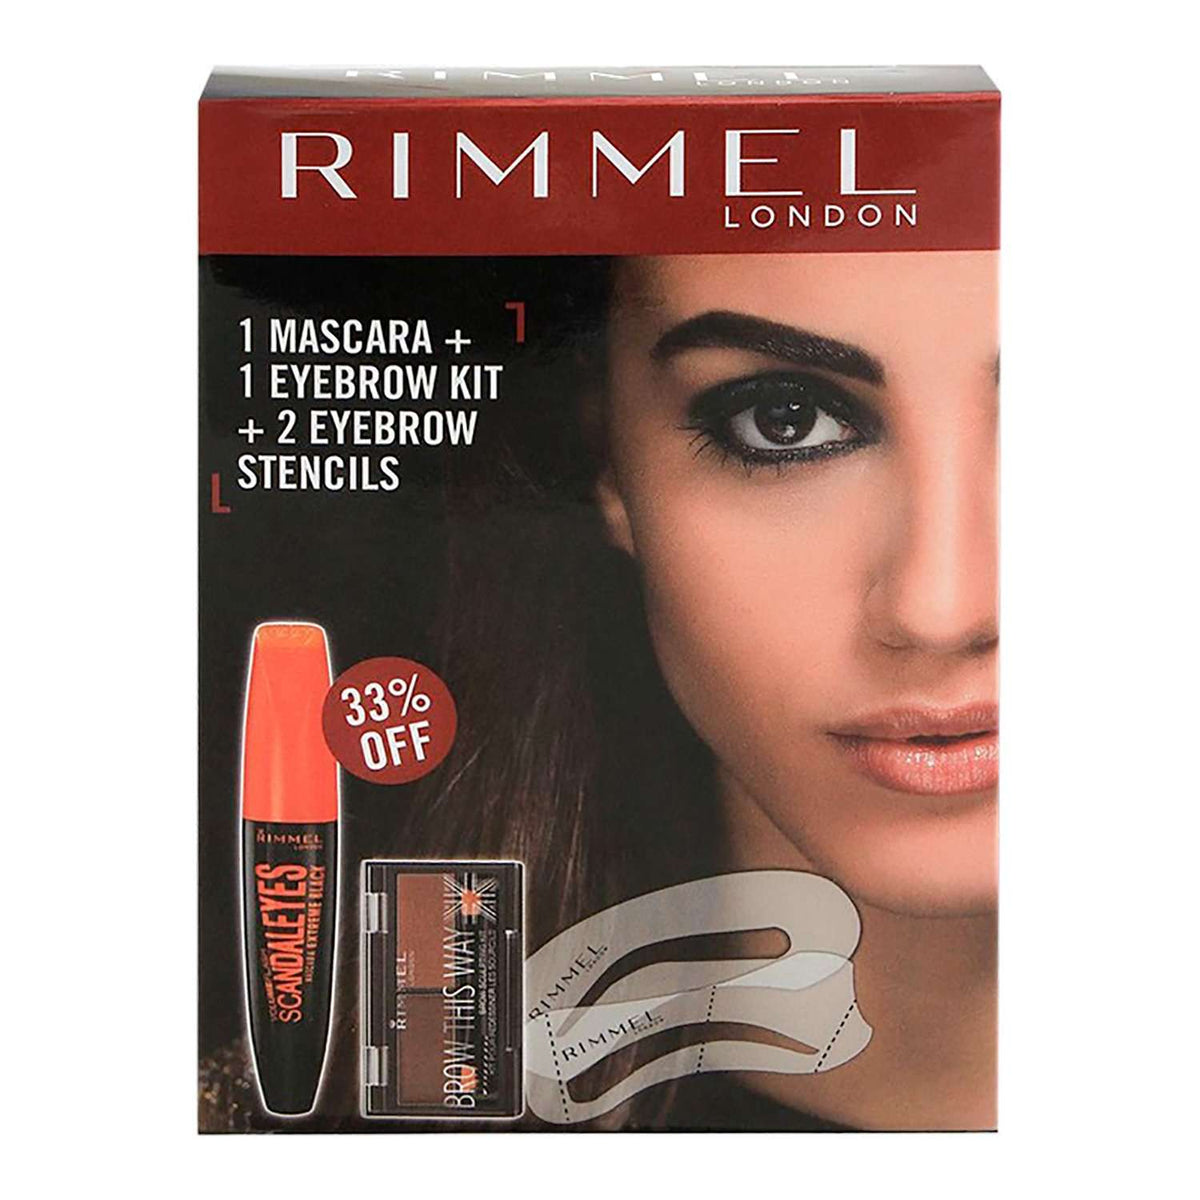 Rimmel - Mascara + Eye Brow Kit